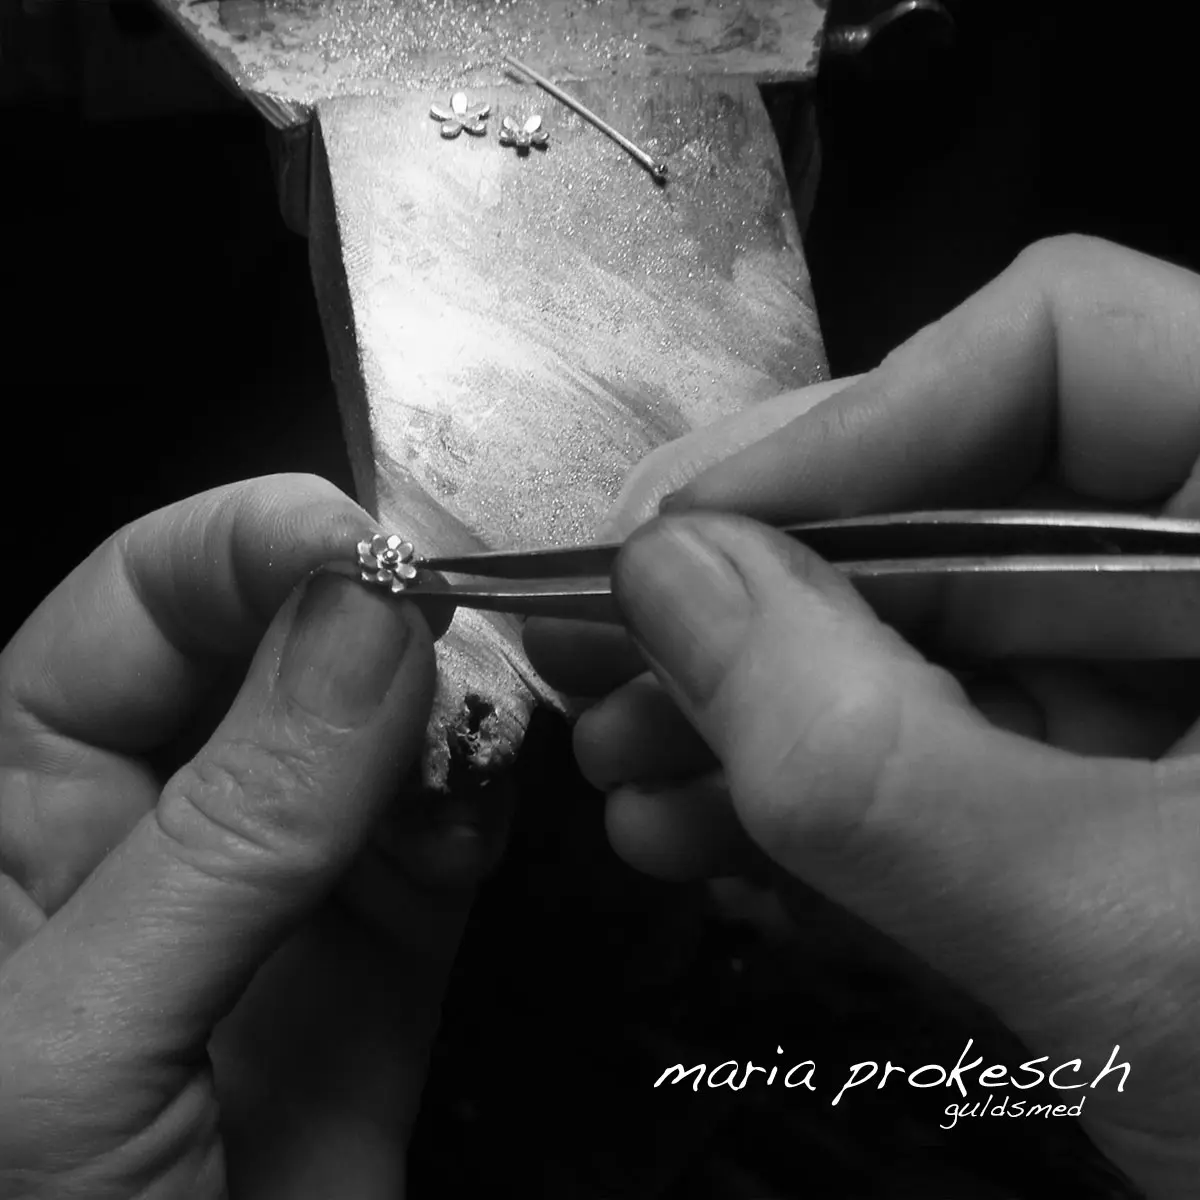 Håndlavede vielsesringe fra Guldsmede værksted. Køb unikke guldringe, feminine og maskuline design. Detaljer med guldblomster og udsavninger til kvinde. Mandering enkel. Alle ringe håndlavet.